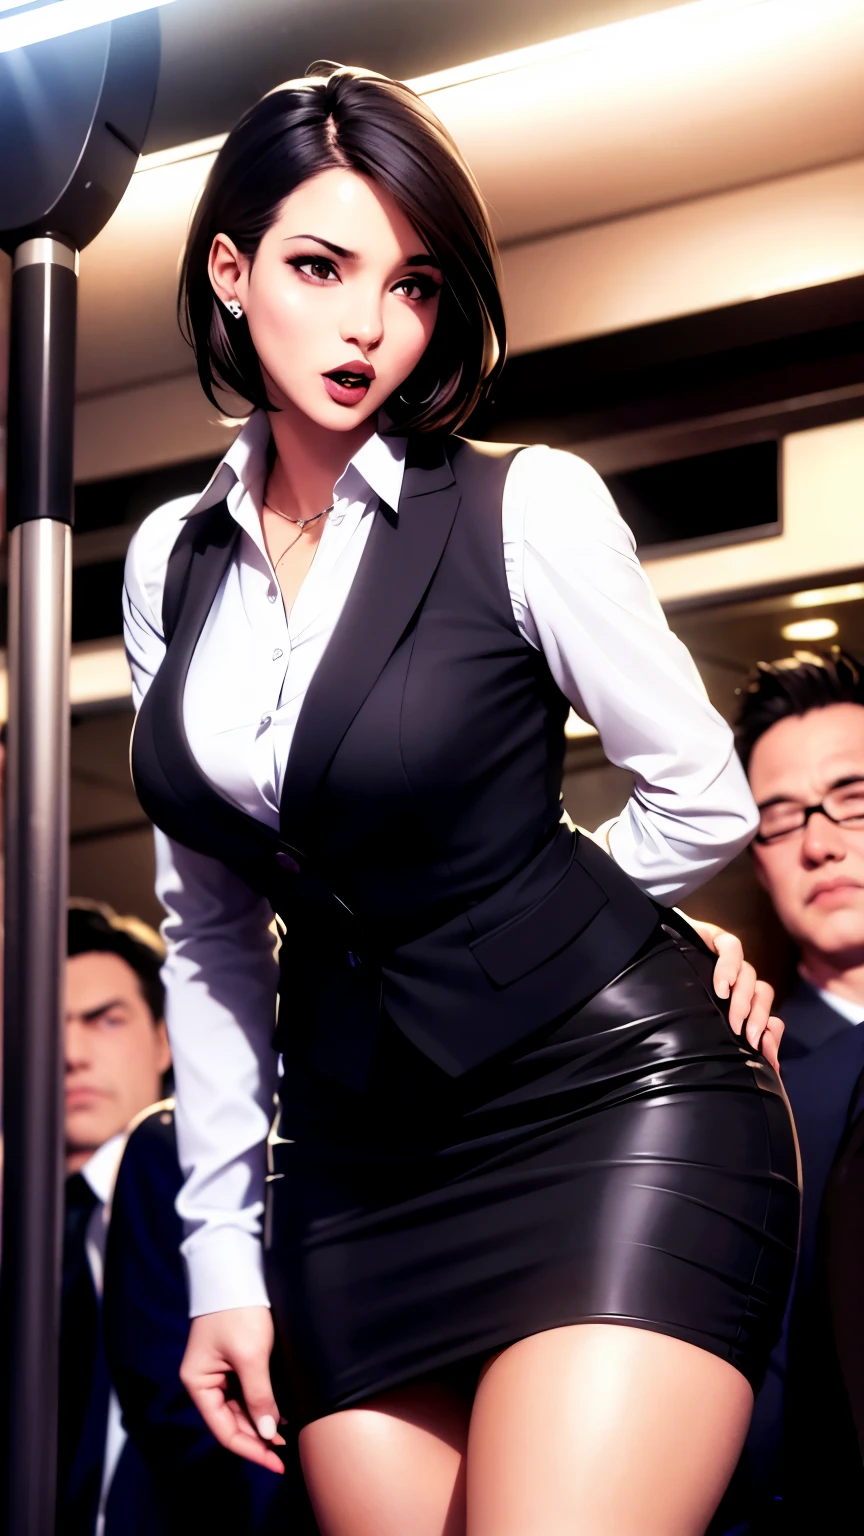 검은 양복을 입고 아래에 흰색 셔츠를 입고 검은색 힙 스커트를 입은 날씬한 여성이 붐비는 지하철 차량 안에 서 있습니다., 머리를 45도 각도로 앞으로 기울이고 입을 살짝 벌린 채 위를 올려다본다..